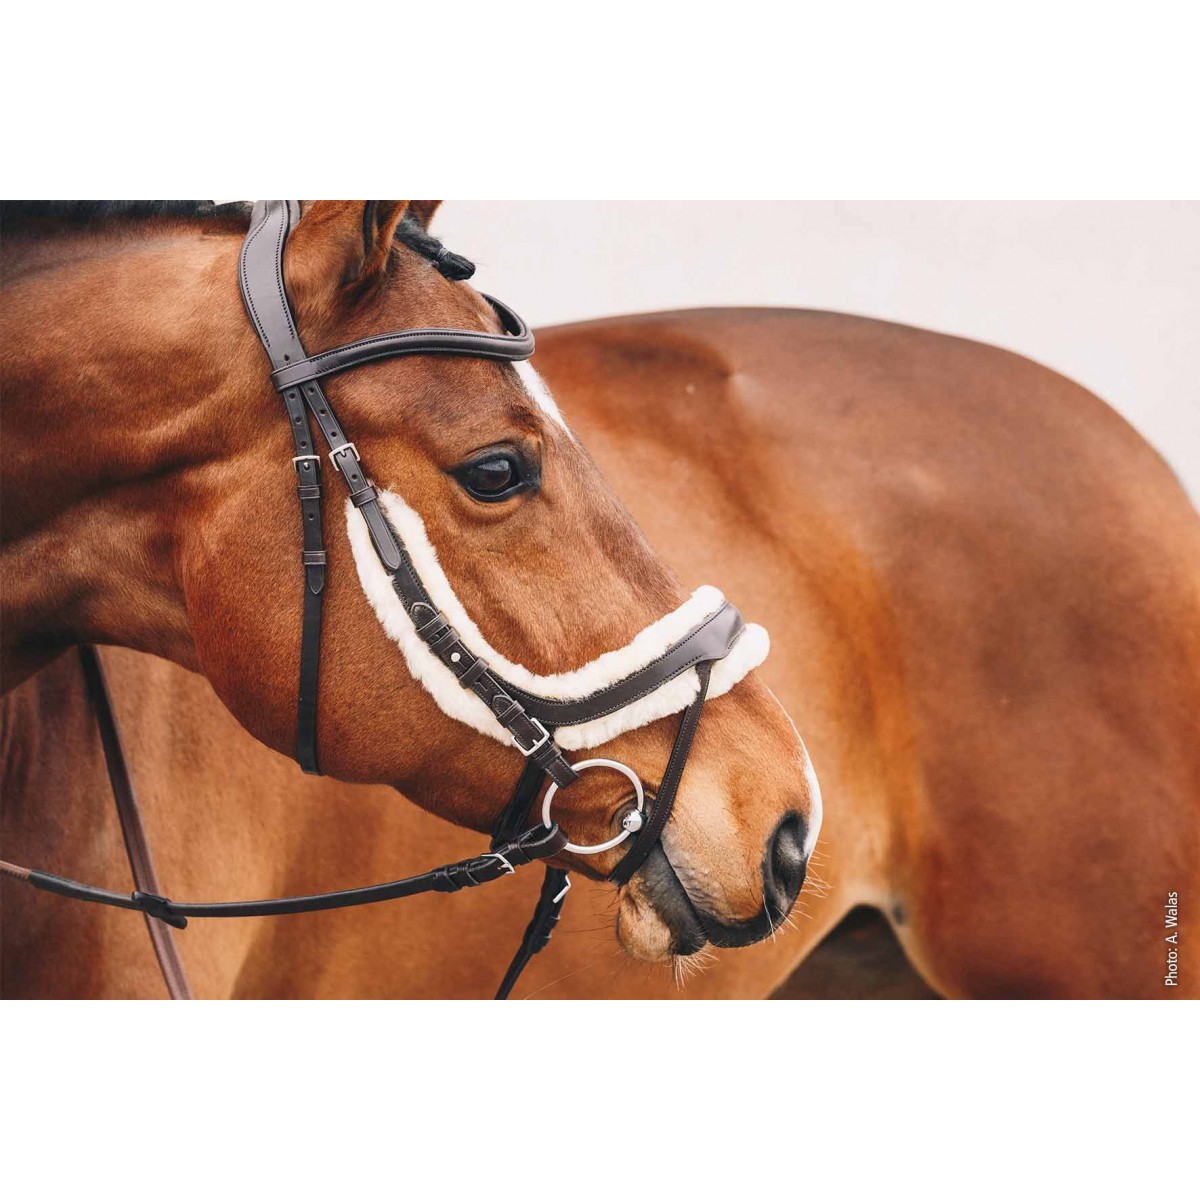 TESTIERA EQUILINE ANATOMICA - Selleria La Quercia - articoli per cavalli e  cavalieri